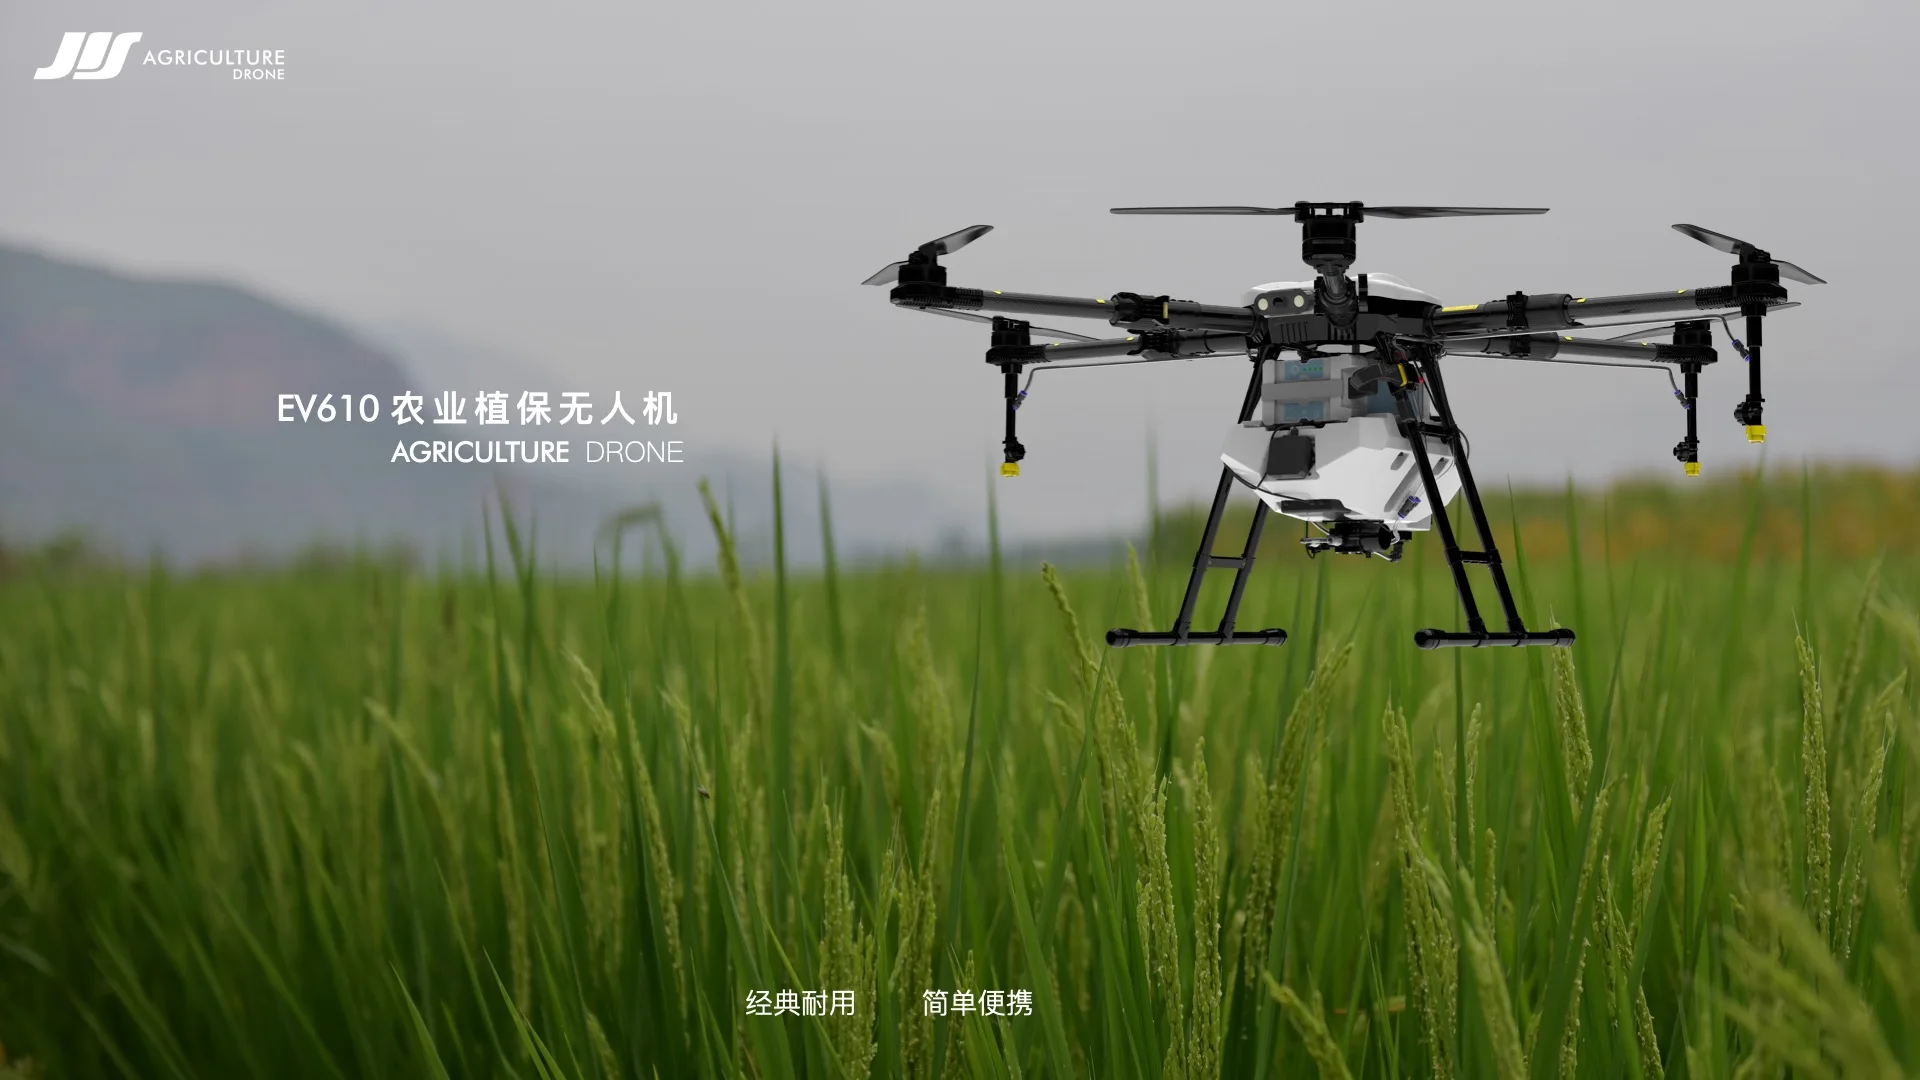 JIS EV610 10L  Agriculture drone, AGRICULTURE DRONE EV610 RJlIRE A #l